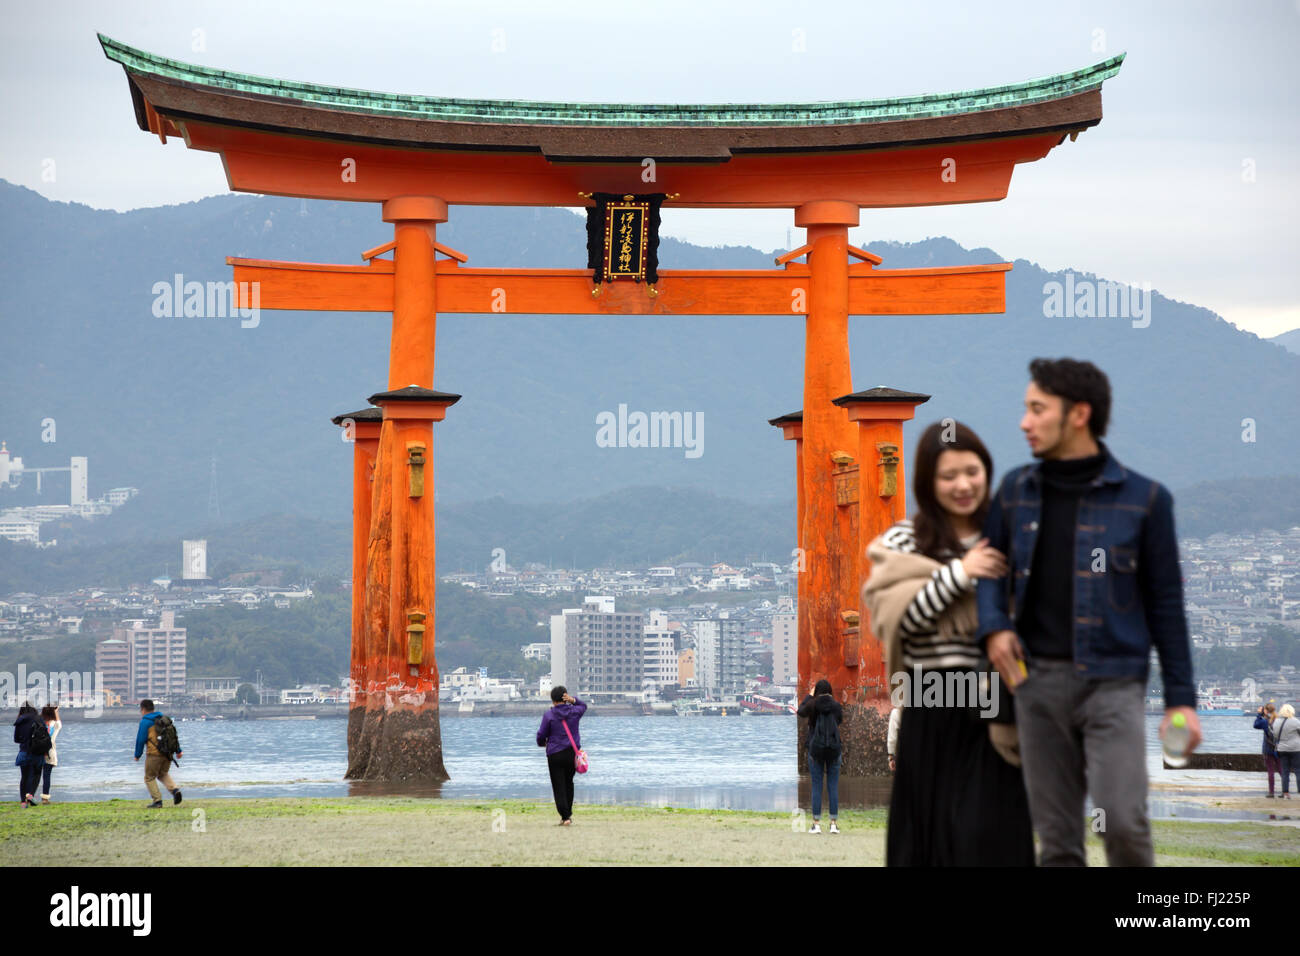 Itsukushima Schrein ist ein Shinto Schrein auf der Itsukushima Insel (im Volksmund als Miyajima bekannt), am besten für die "schwimmende torii Tor bekannt. Stockfoto